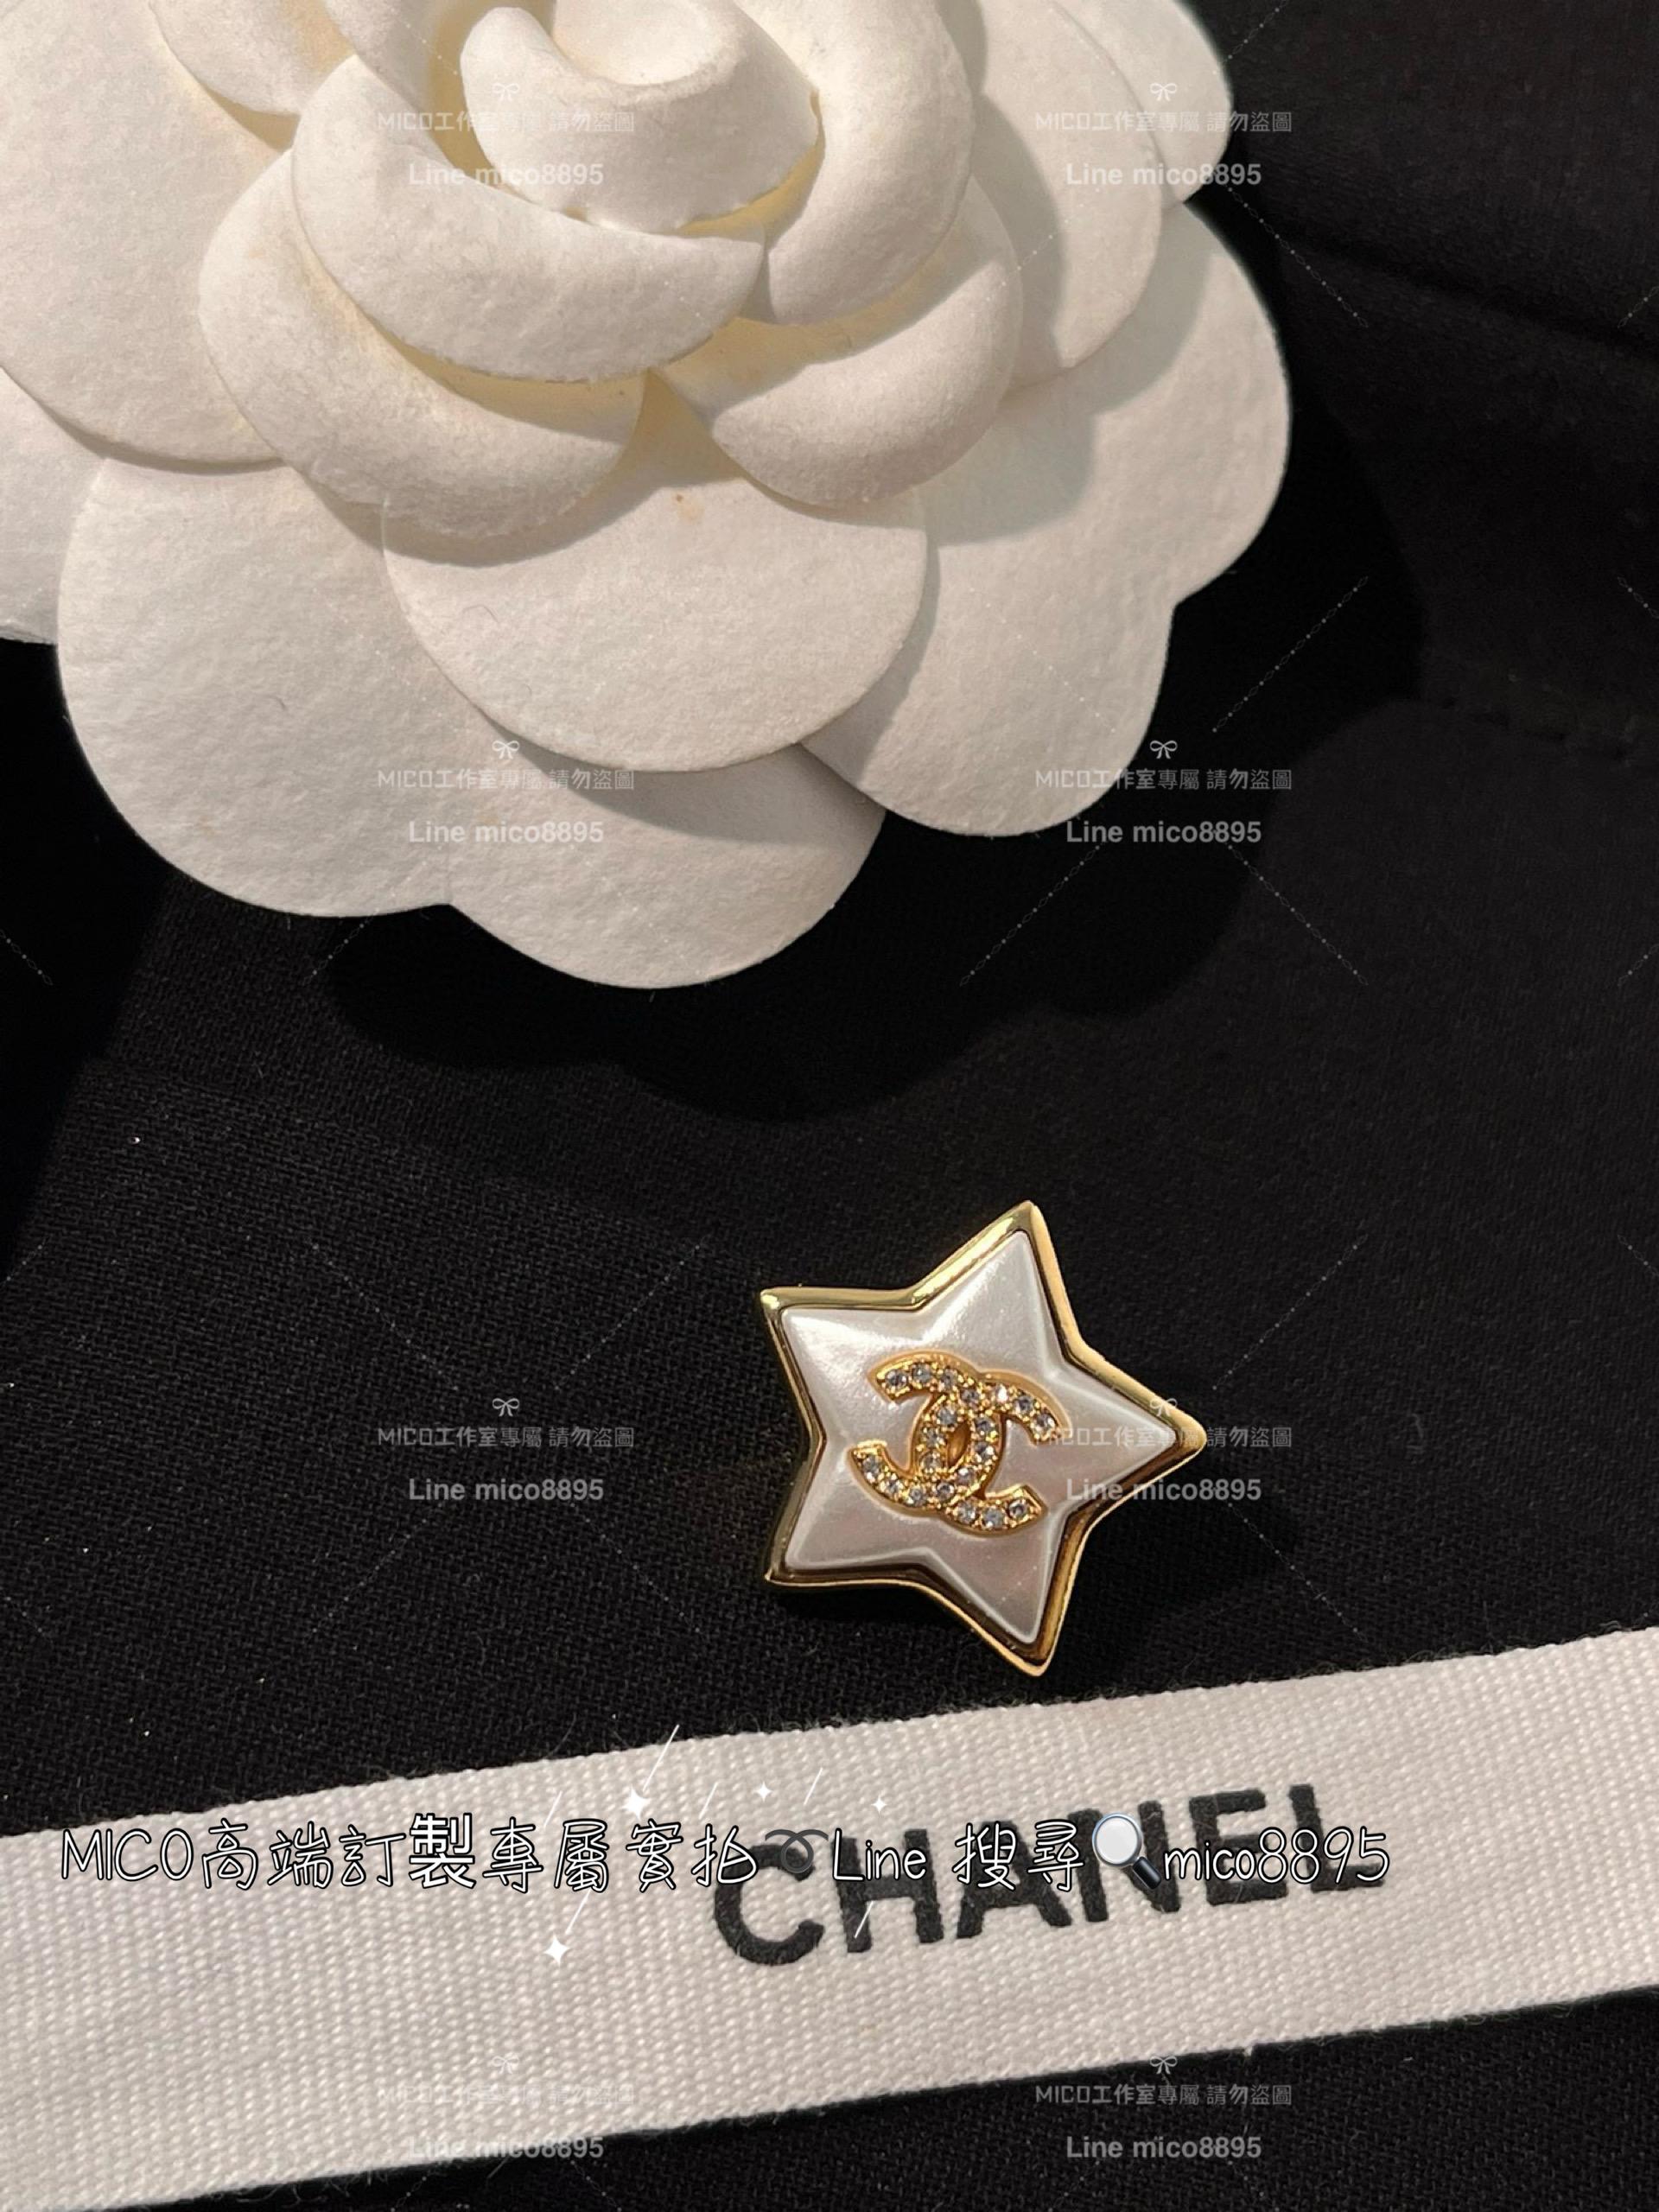 chanel 珠光樹脂五角星星滿鑽雙C胸針 白色琺瑯水鑽雙c胸針